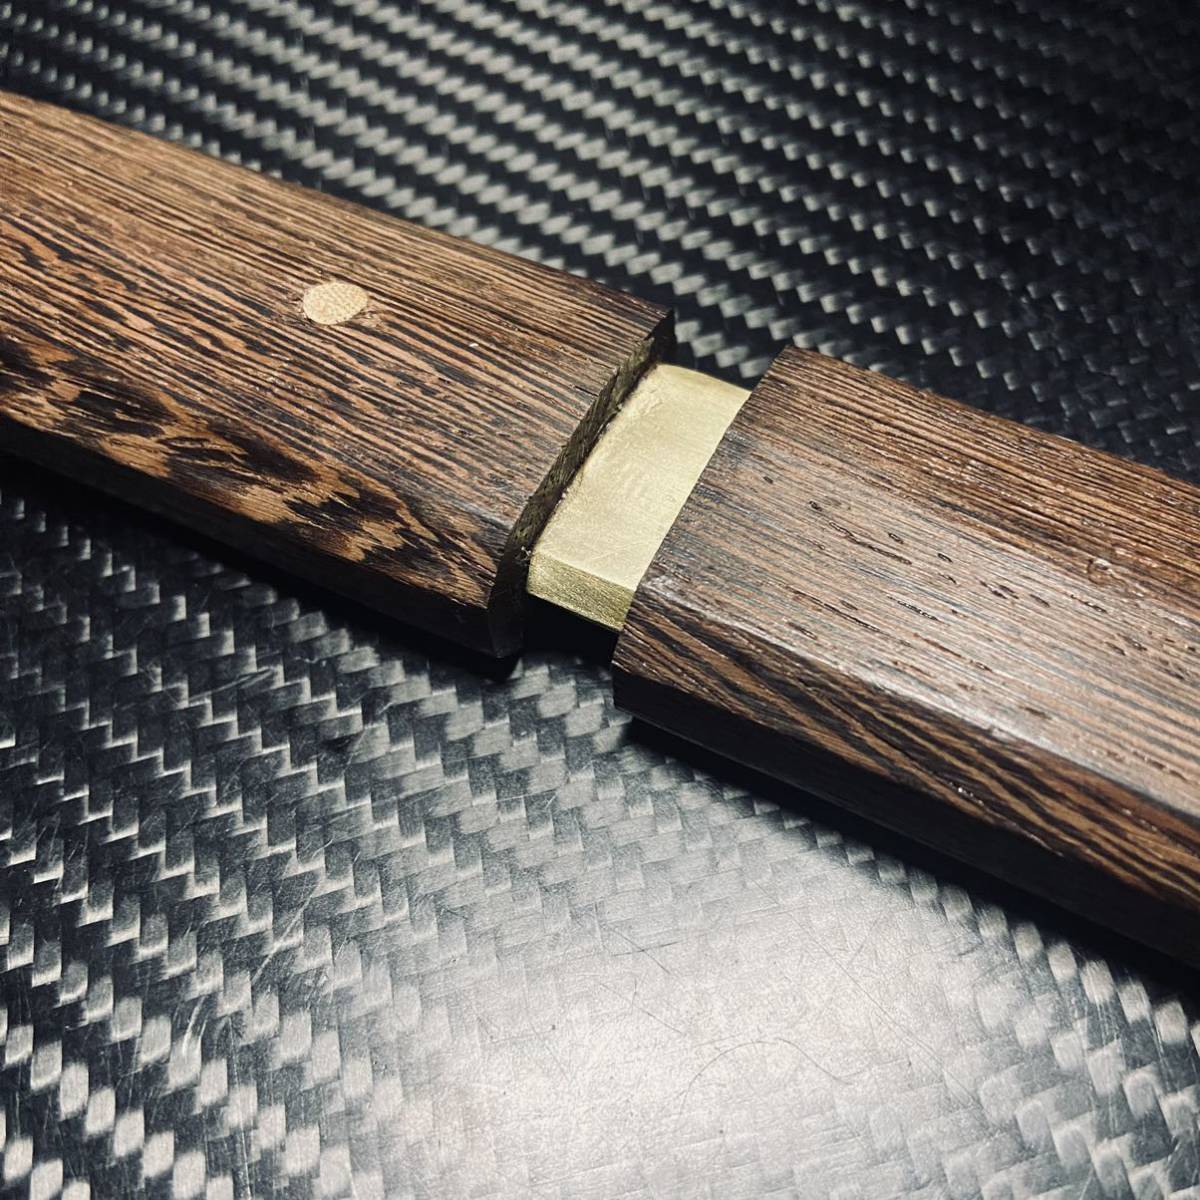 高級木製 短刀 和風短刀 木鞘ナイフ 和式ナイフ 伝統工芸 日本刀型 216g_画像7